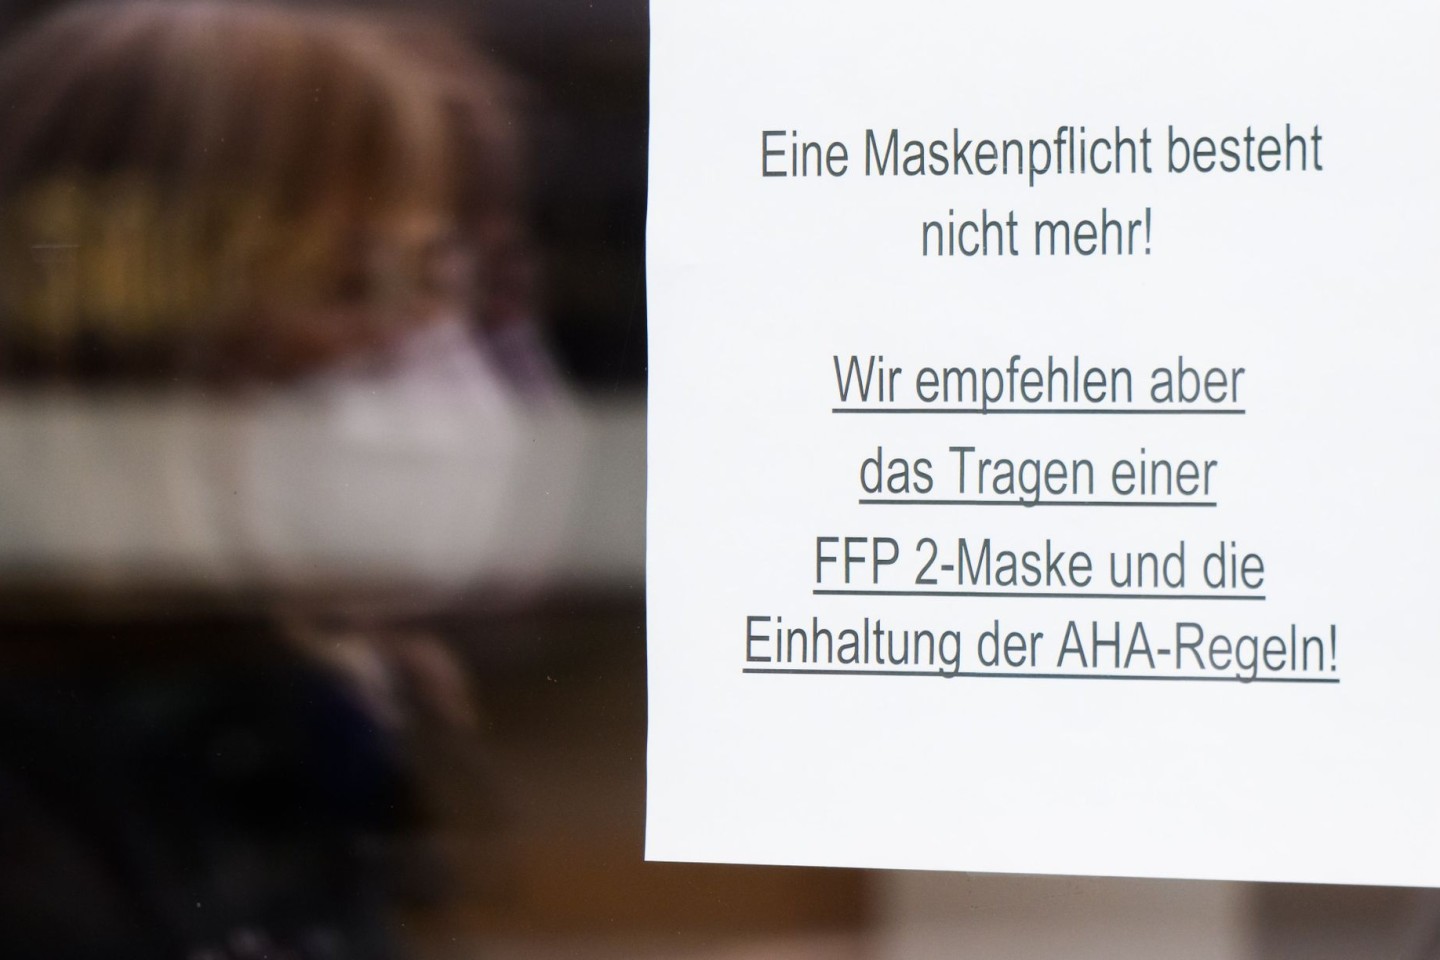 Die Maskenpflicht ist in weiten Teilen Deutschlands entfallen. Empfehlungen aber sind geblieben.